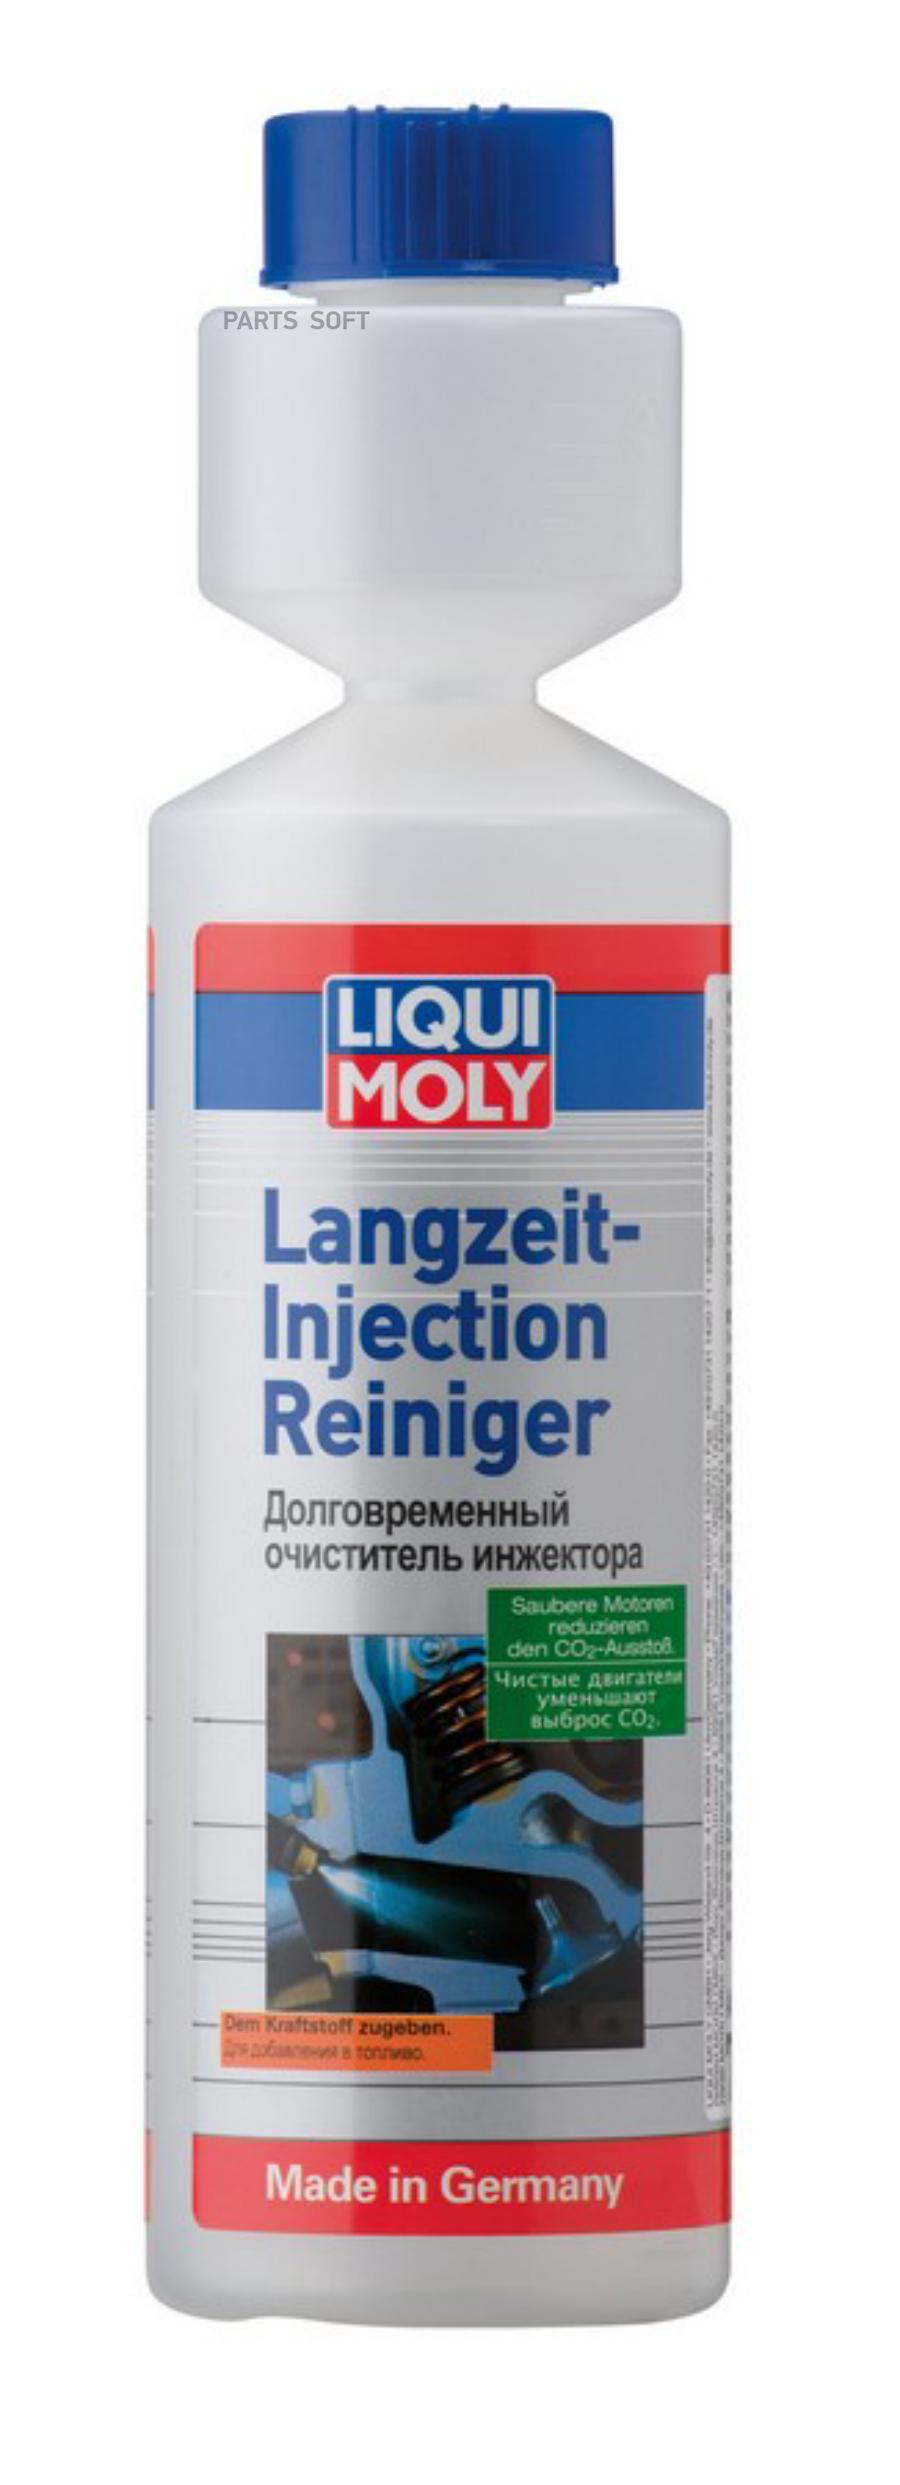 LiquiMoly Langzeit-Injection Reiniger 0.25L_очиститель инжектора долговременный